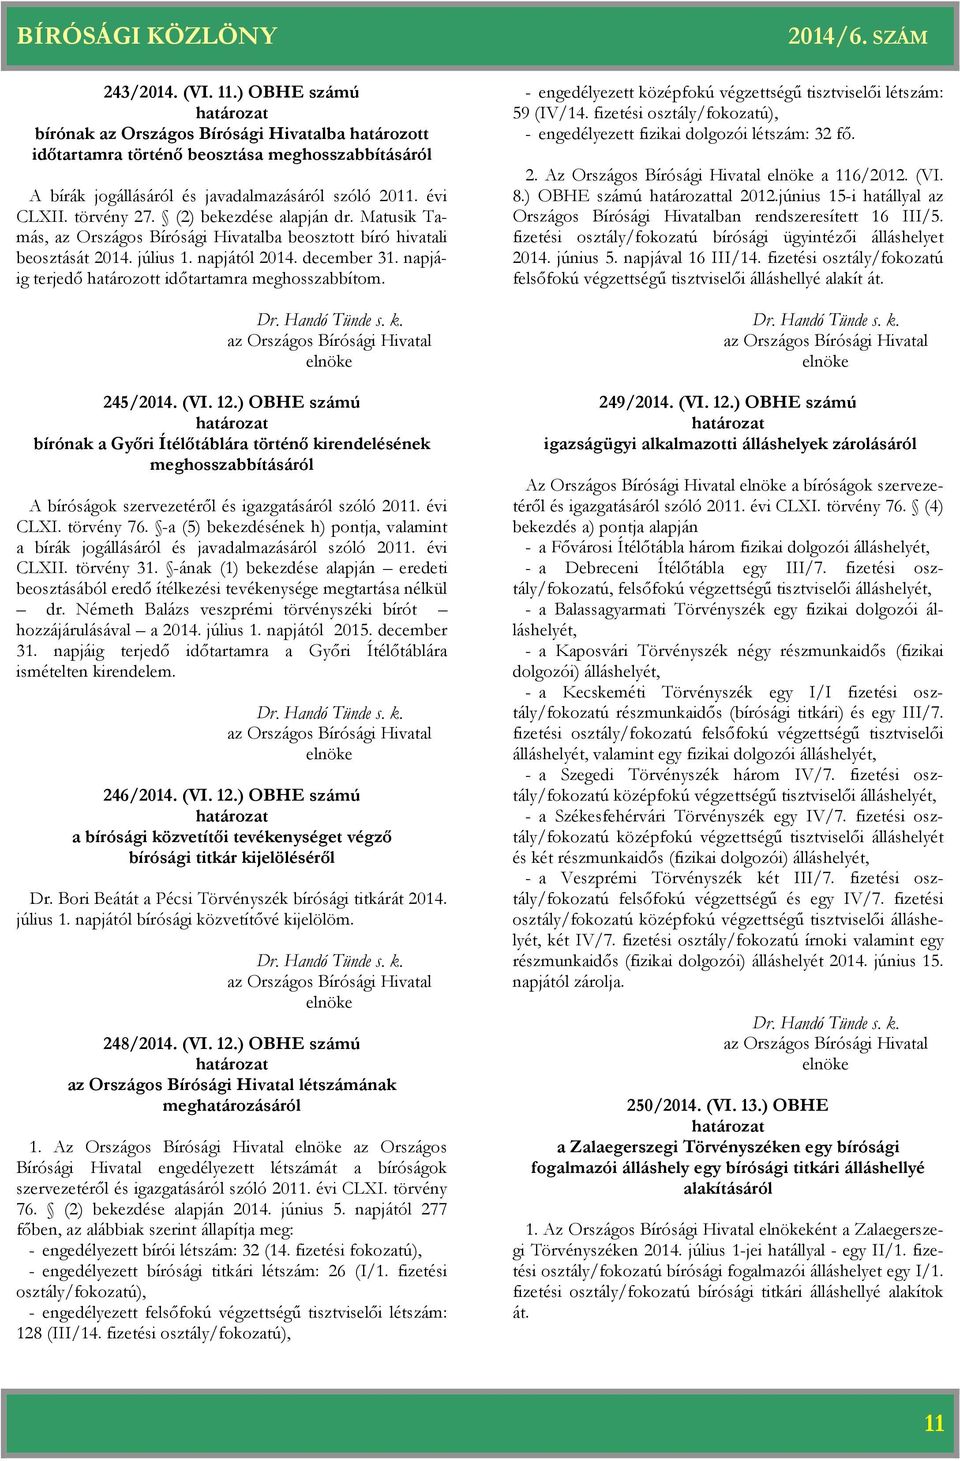 ) OBHE számú nak a Győri Ítélőtáblára történő kirendelésének meghosszabbításáról A ságok szervezetéről és igazgatásáról szóló 2011. évi CLXI. törvény 76.